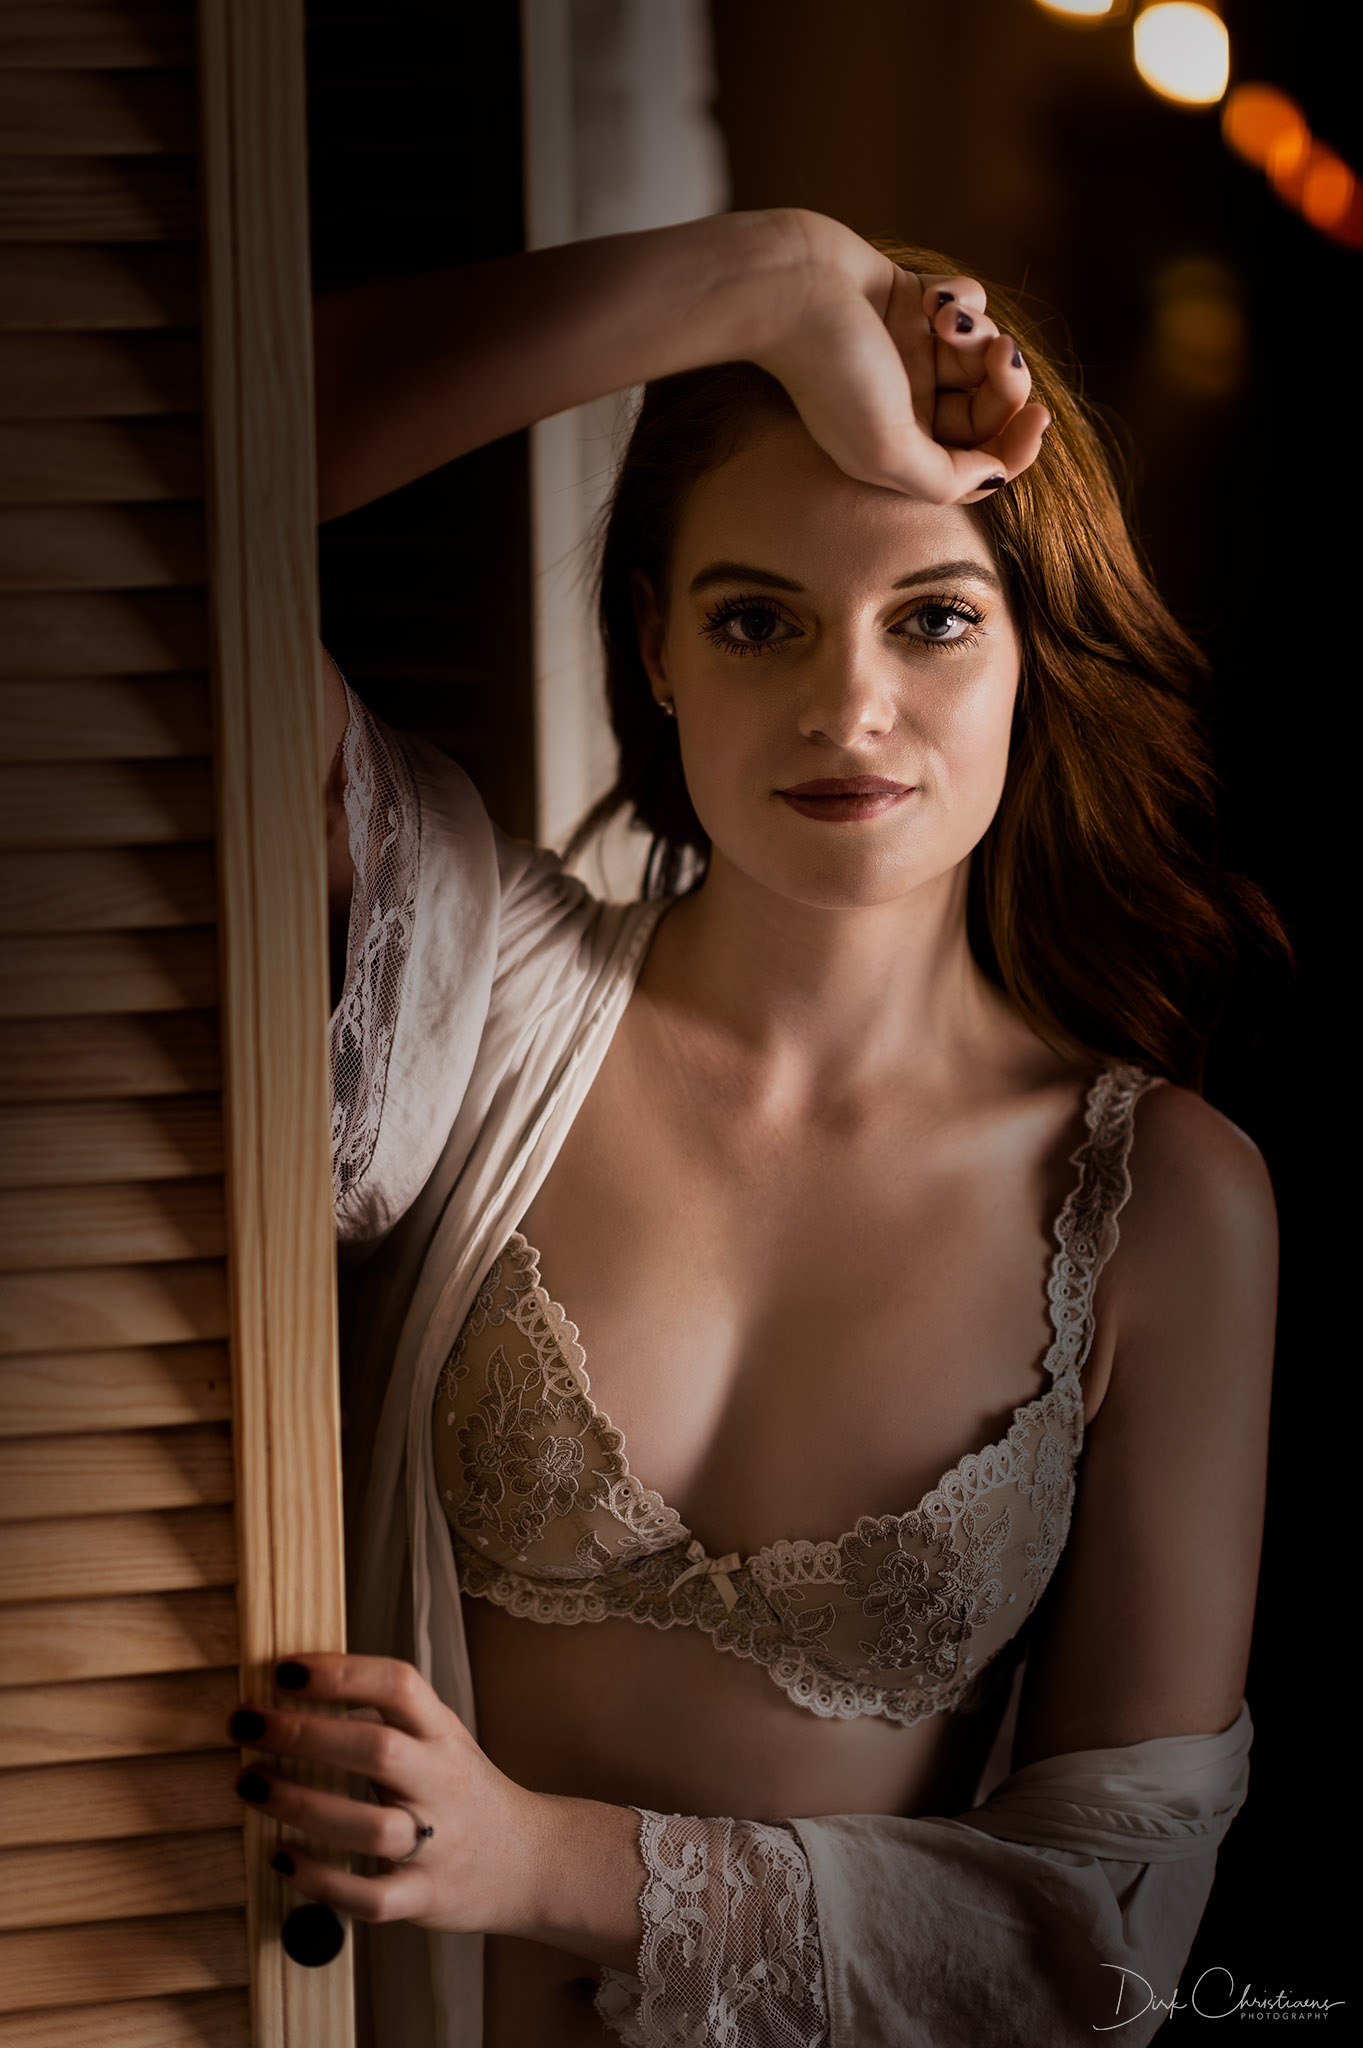 Célina Dekeyser, model from Belgium at a boudoir photoshoot